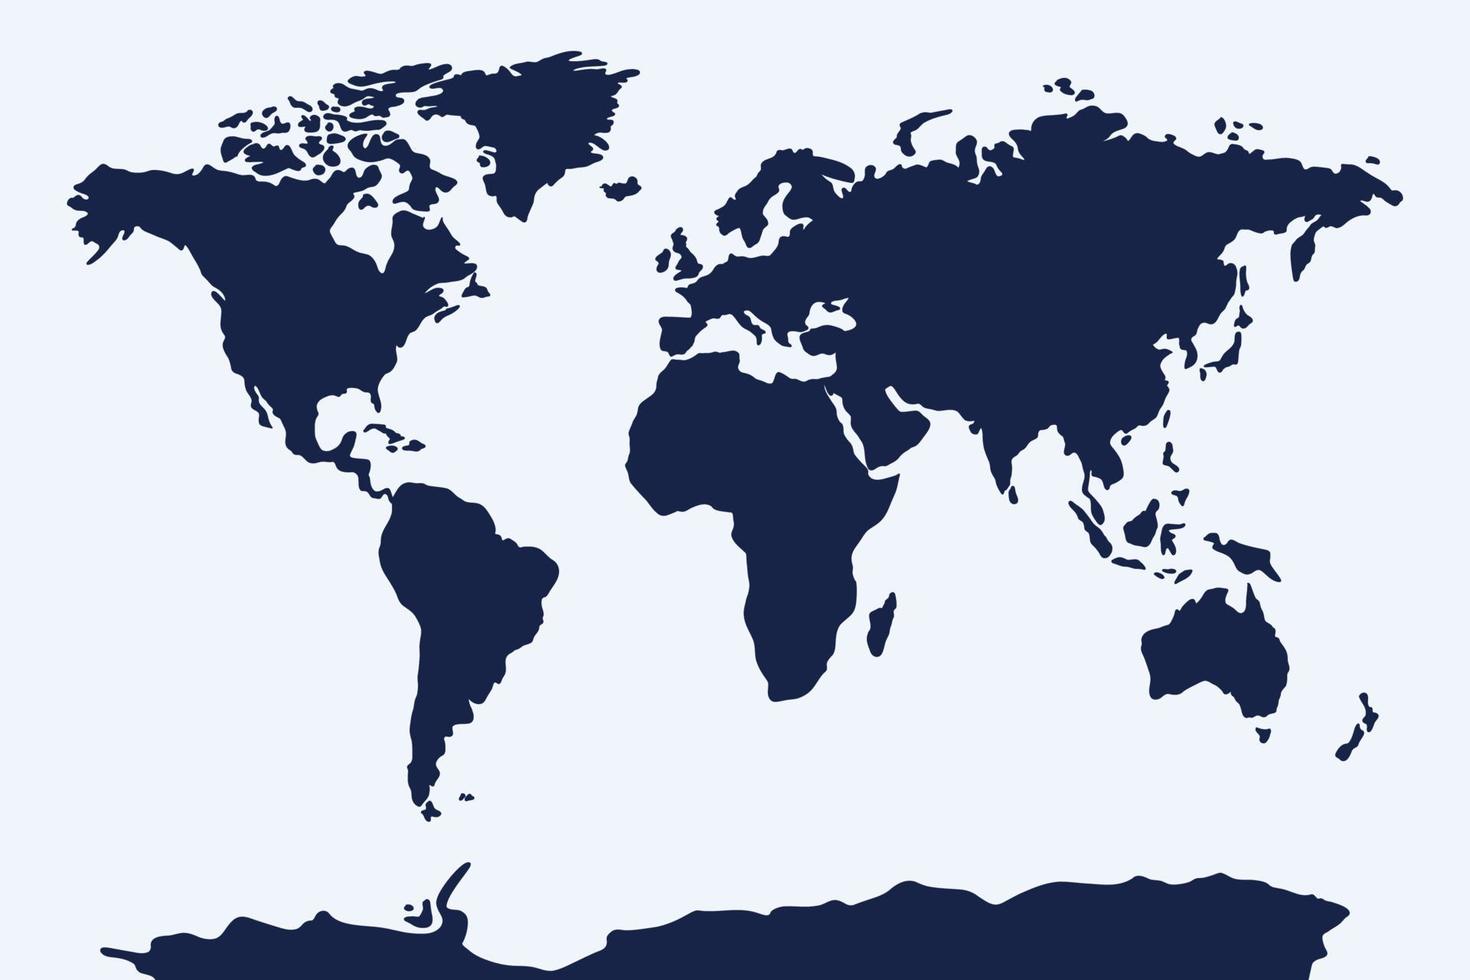 Muster der Weltkarte. kontinent vereinfachte silhouettenvorlage für website, hintergrund, inphografien. nordsüdamerika, afrika, europa, asien, australien, antarktische festlandvektorillustration vektor